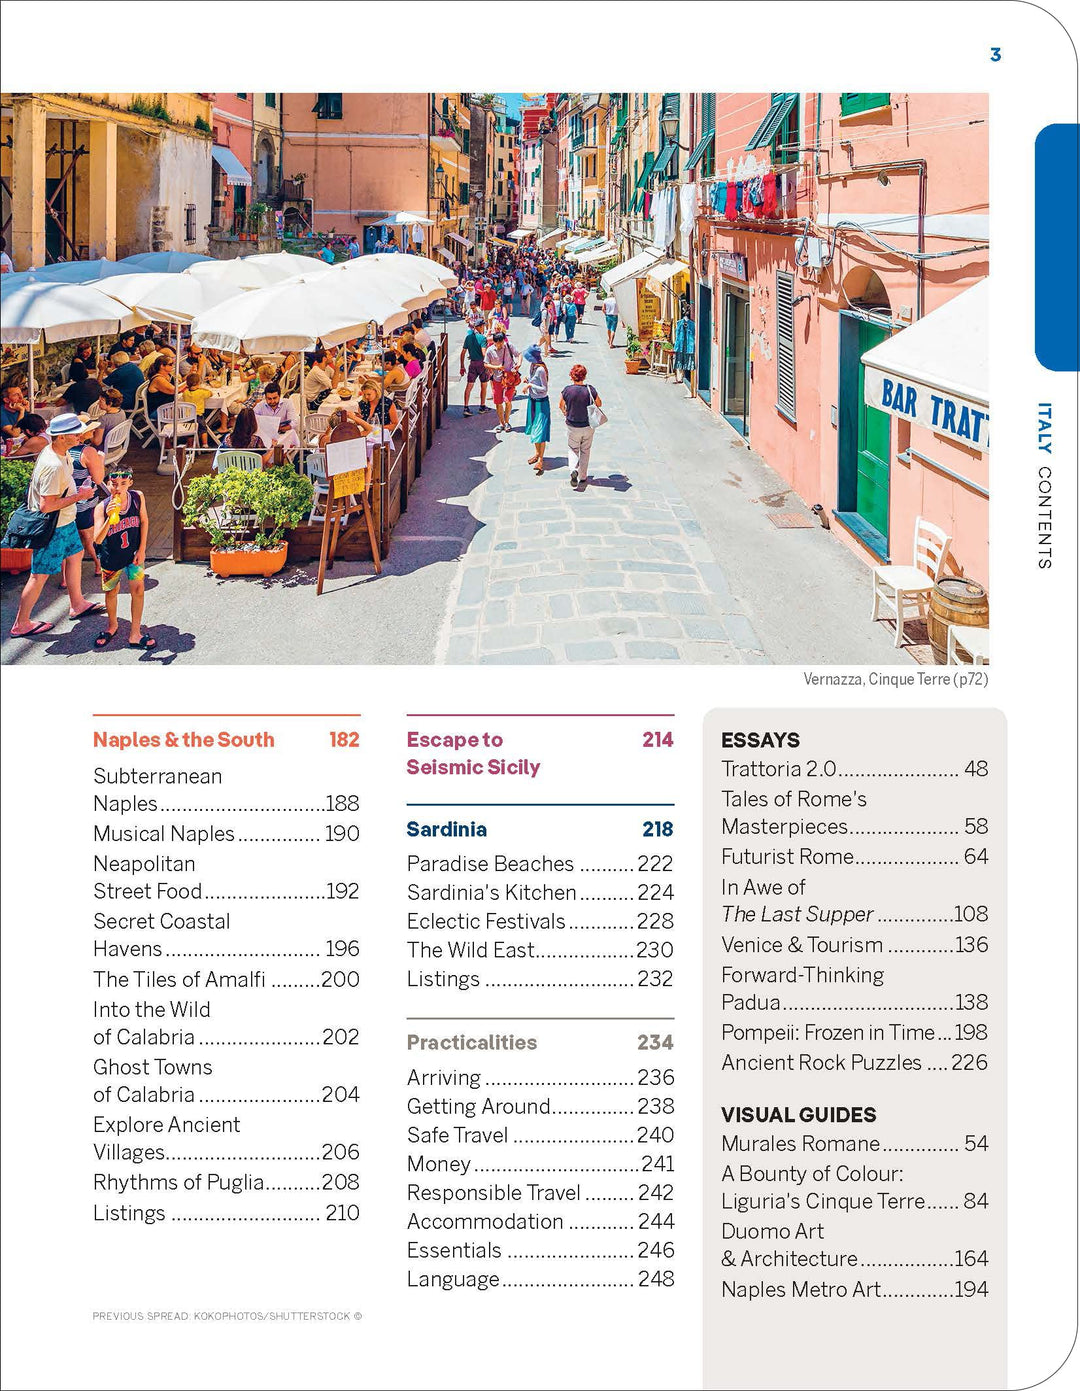 Guide de voyage (en anglais) - Italy Experience | Lonely Planet guide de voyage Lonely Planet 